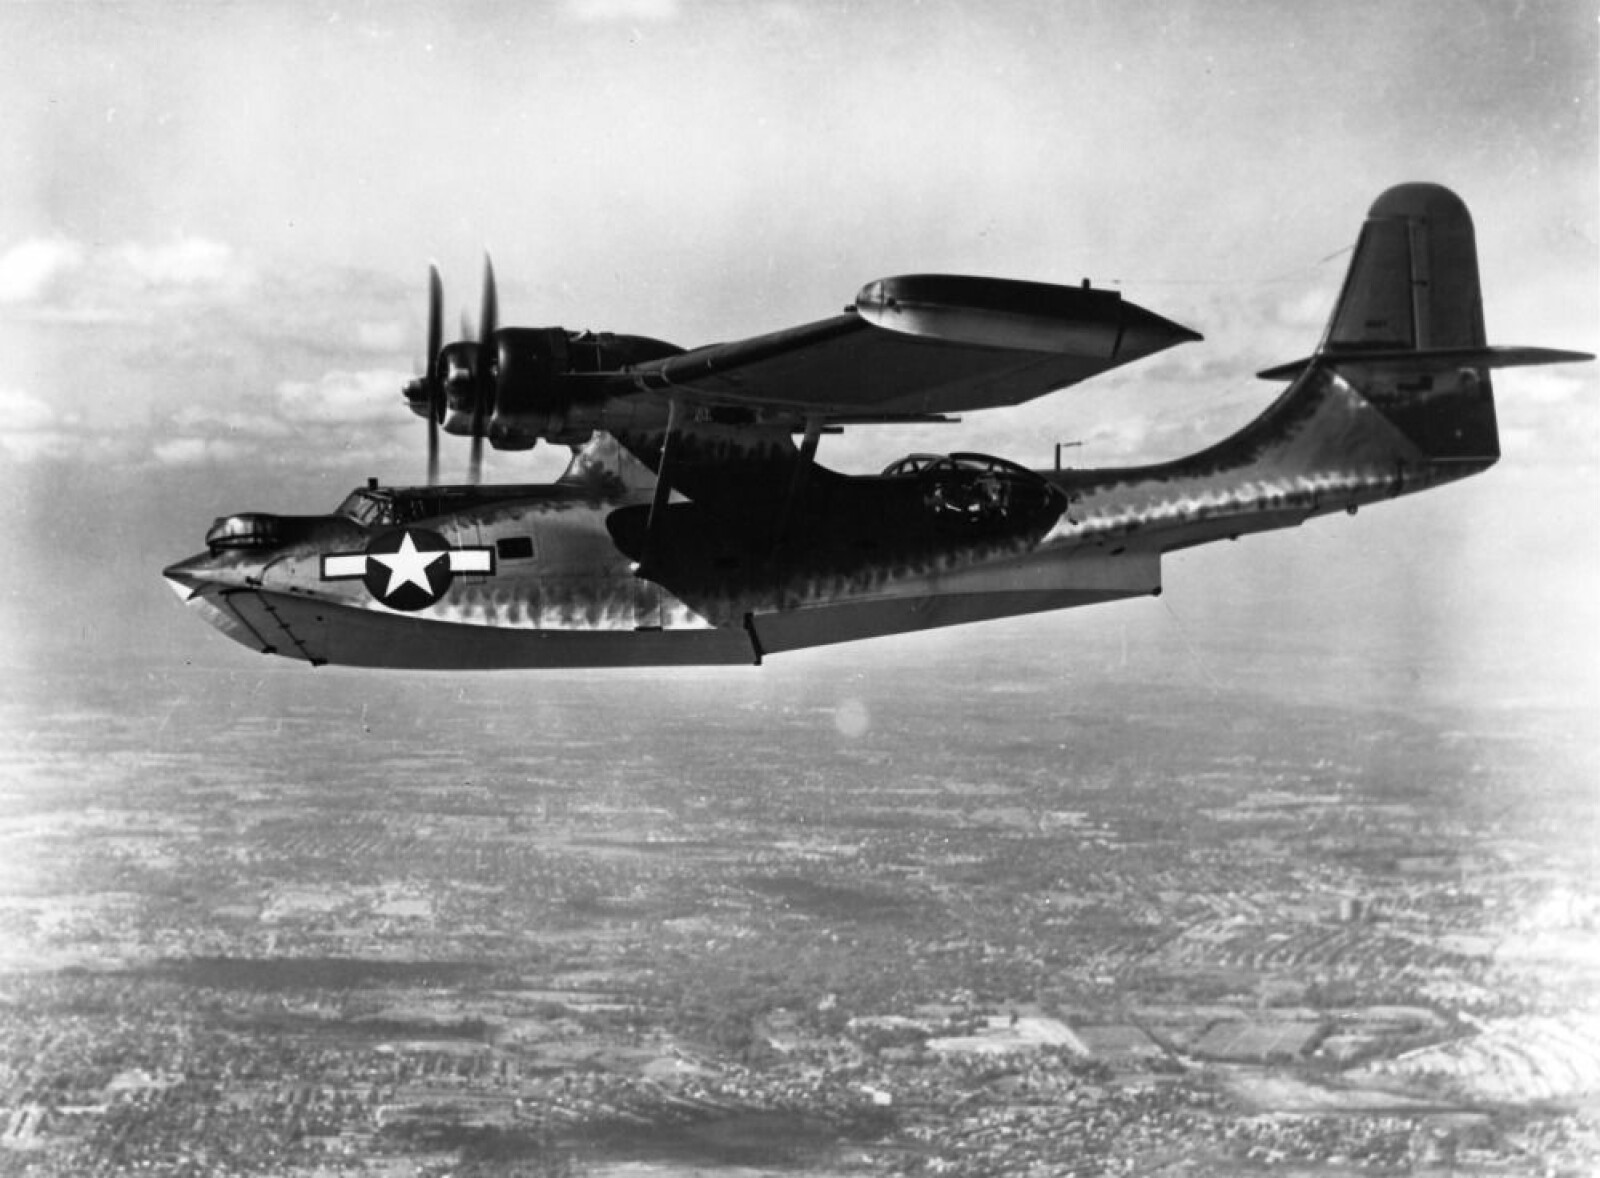 <b>HAVARERTE:</b> Catalina-flyet av denne typen ble gitt i gave til Sovjetsamveldet fra USA i 1944. På vei til ny hjemmebase ved Murmansk havarerte flyet på Sørøya, trolig på grunn av feilnavigasjon. 